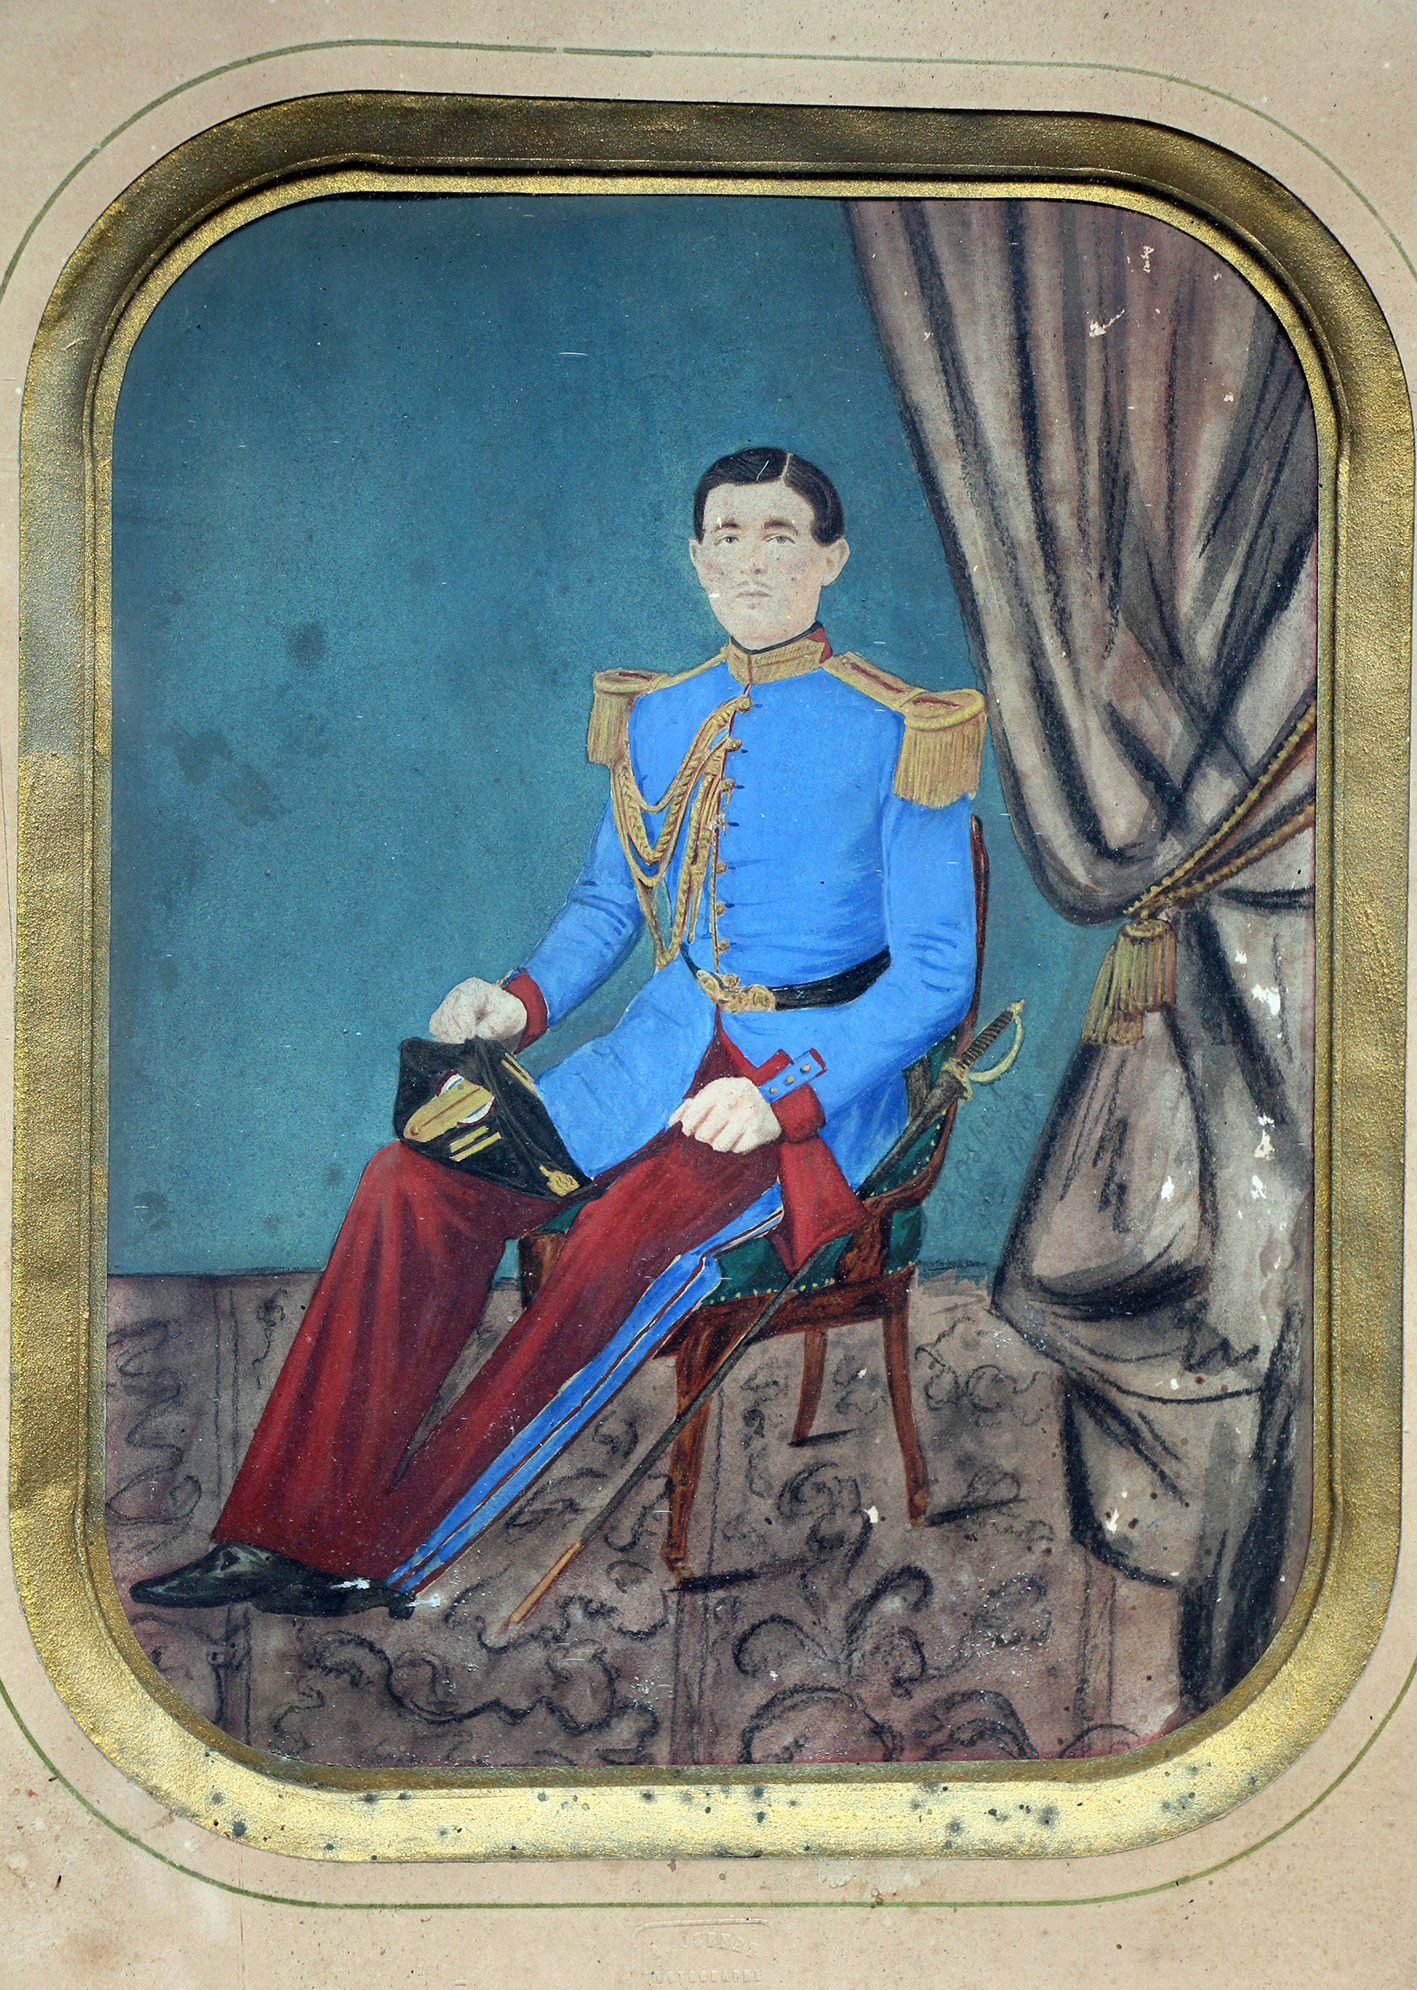 Cent-Gardes 1860 - Garde Impériale Second Empire - Photographie rehaussée - Militaire tenue de sortie.